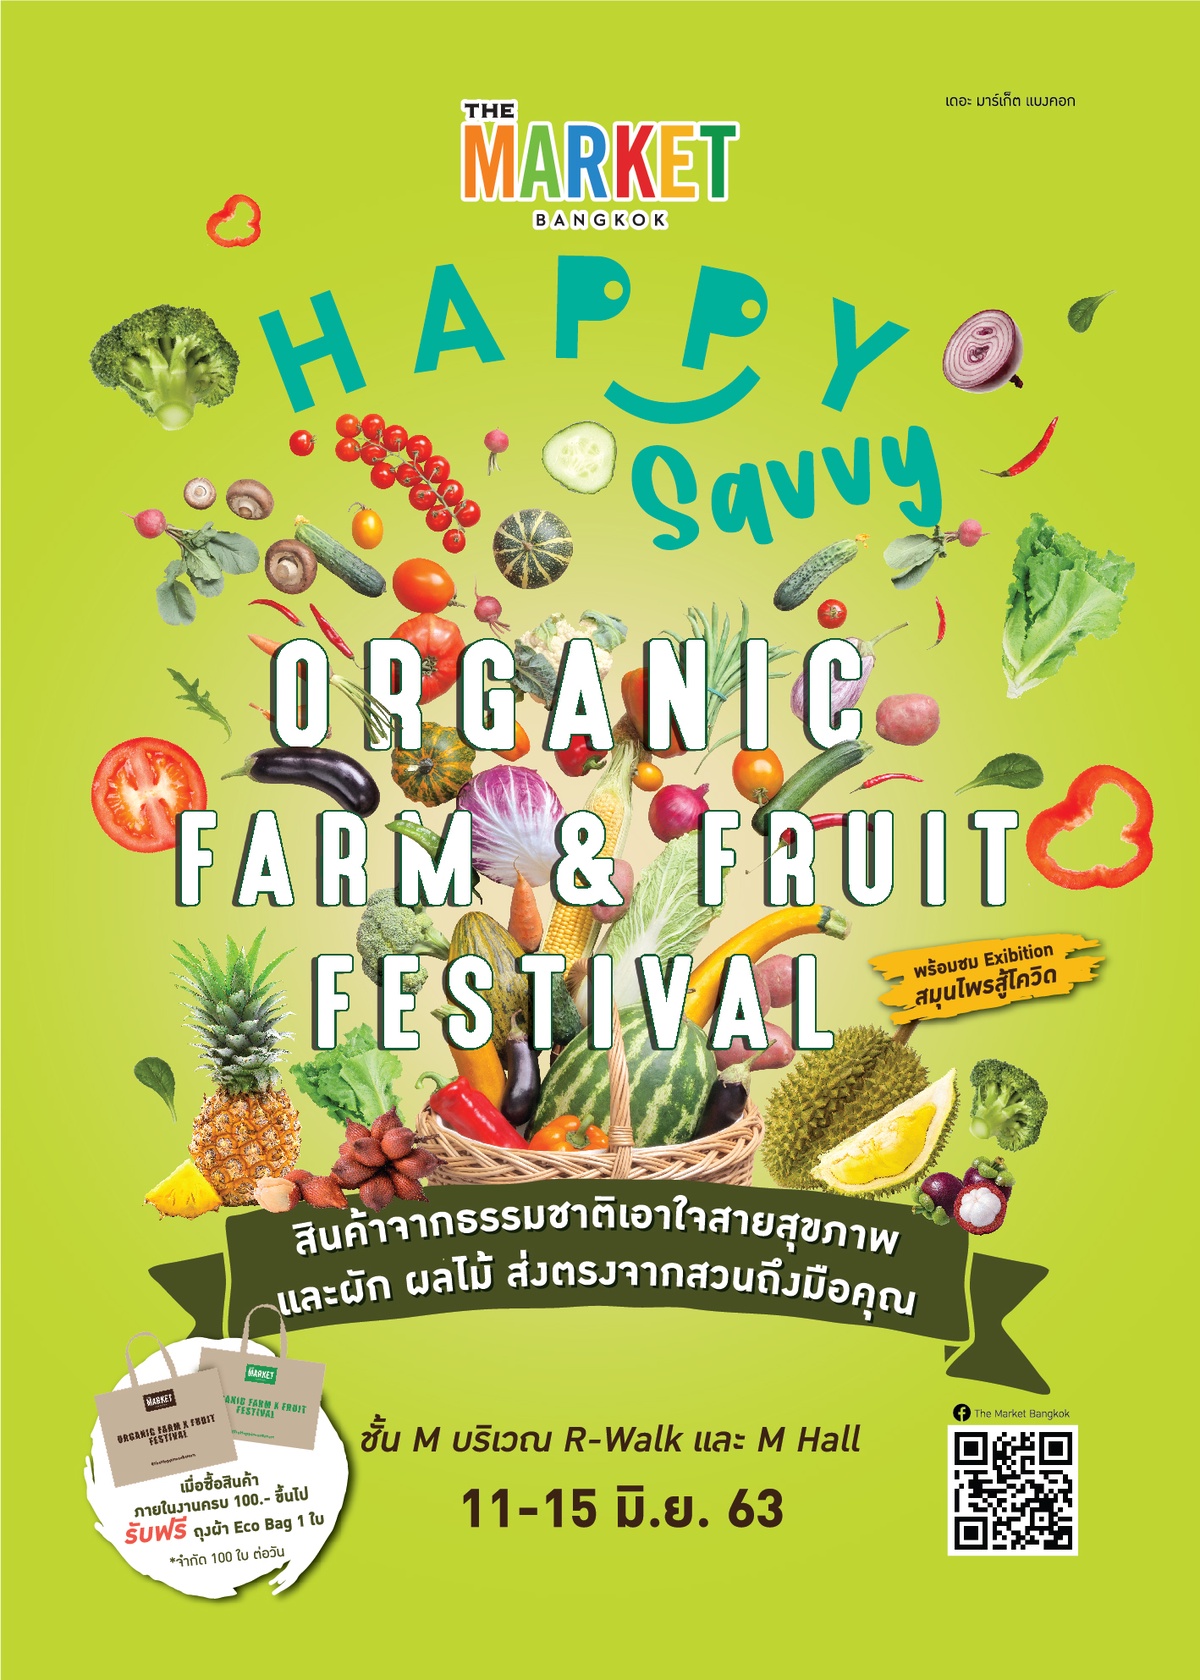 ศูนย์การค้า เดอะ มาร์เก็ต แบงคอก (ย่านราชประสงค์) จัดงาน Happy Savvy: Organic Farm Fruit Festival วันที่ 11 15 มิถุนายน 2563